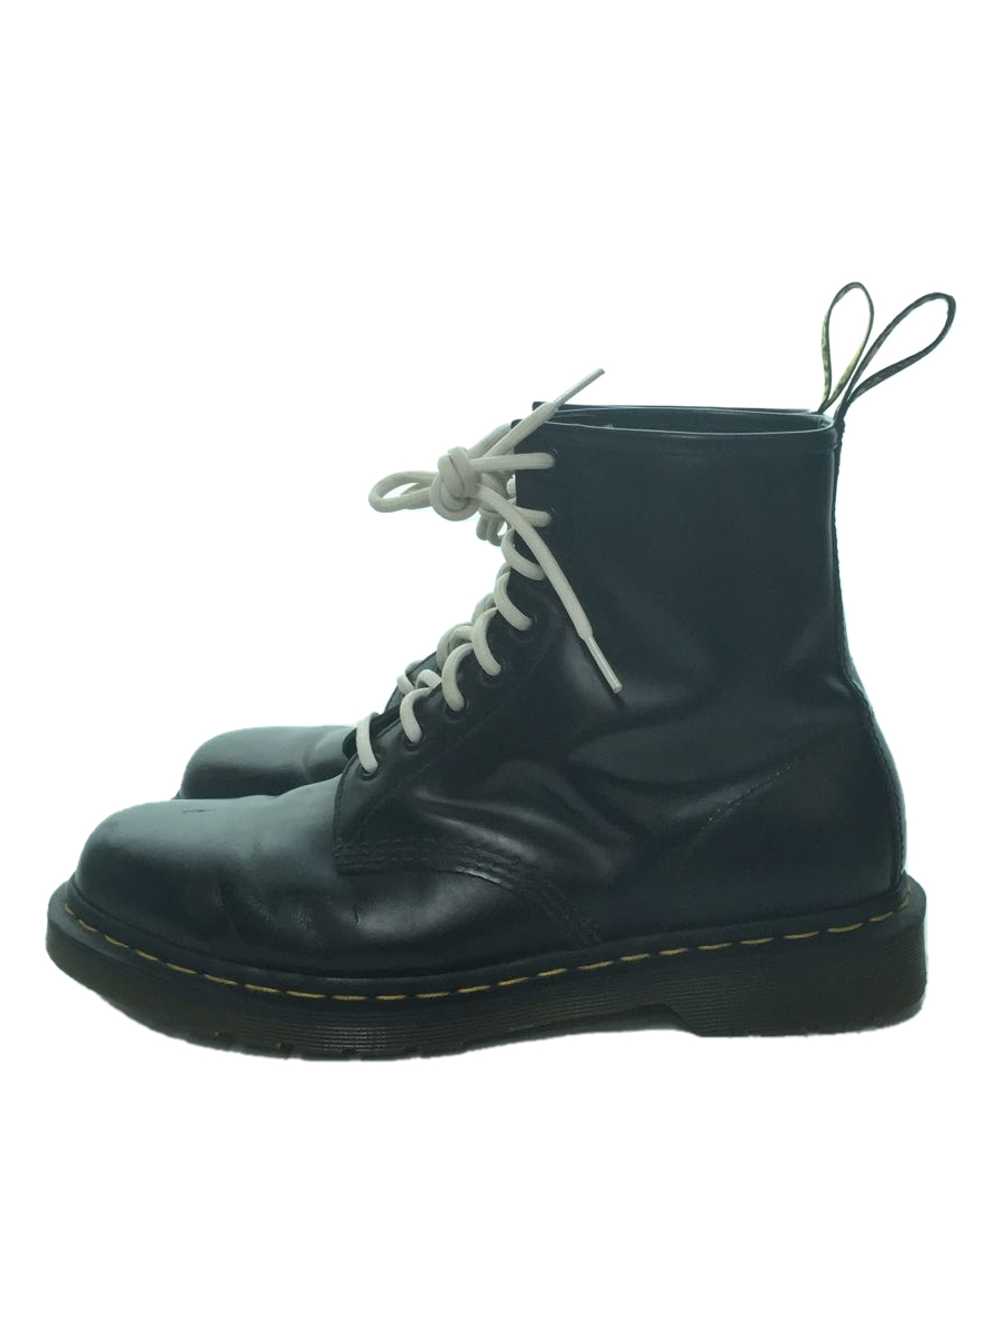 Dr.Martens Boots/Uk9/Blk/Leather/11822/Wrinkle Sh… - image 1